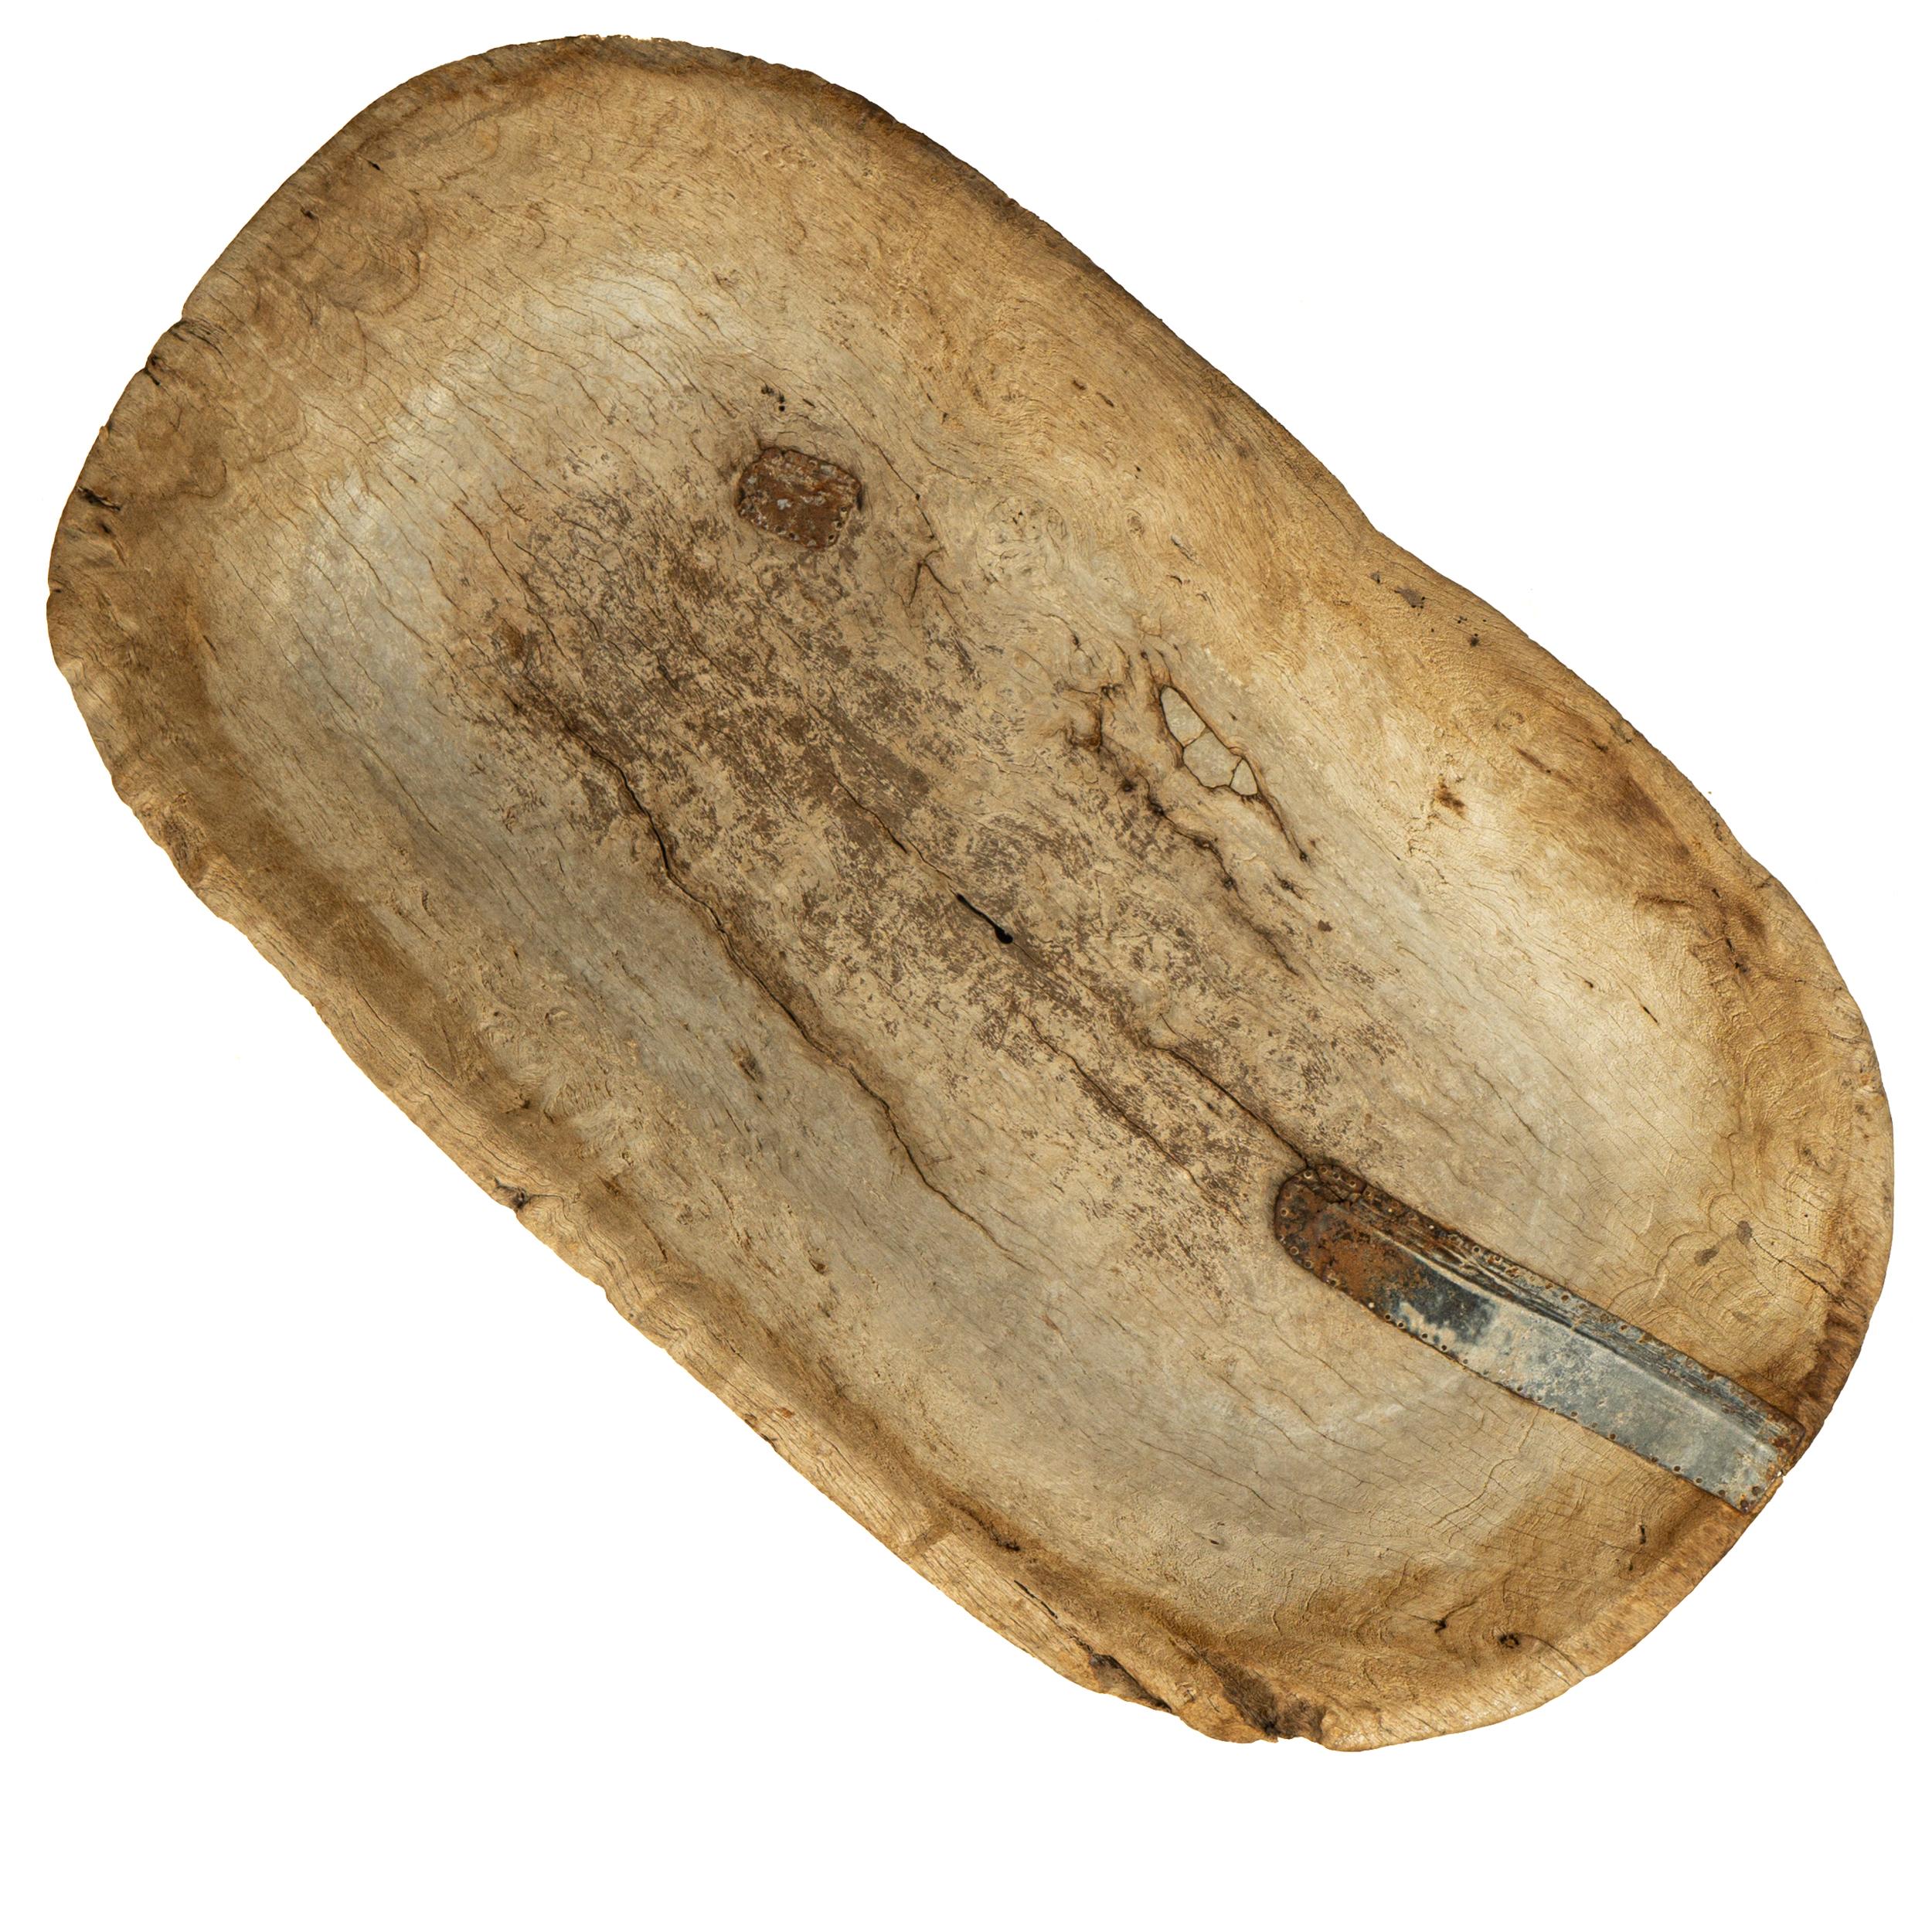 Remarquable bol à pâte en bois de mesquite trouvé dans l'ouest du Mexique, au milieu du XIXe siècle, sculpté dans un seul bloc de bois. 

Il est rare de rencontrer ce type de BIGLI dans un si bel état, surtout de cette taille. Cette pièce est